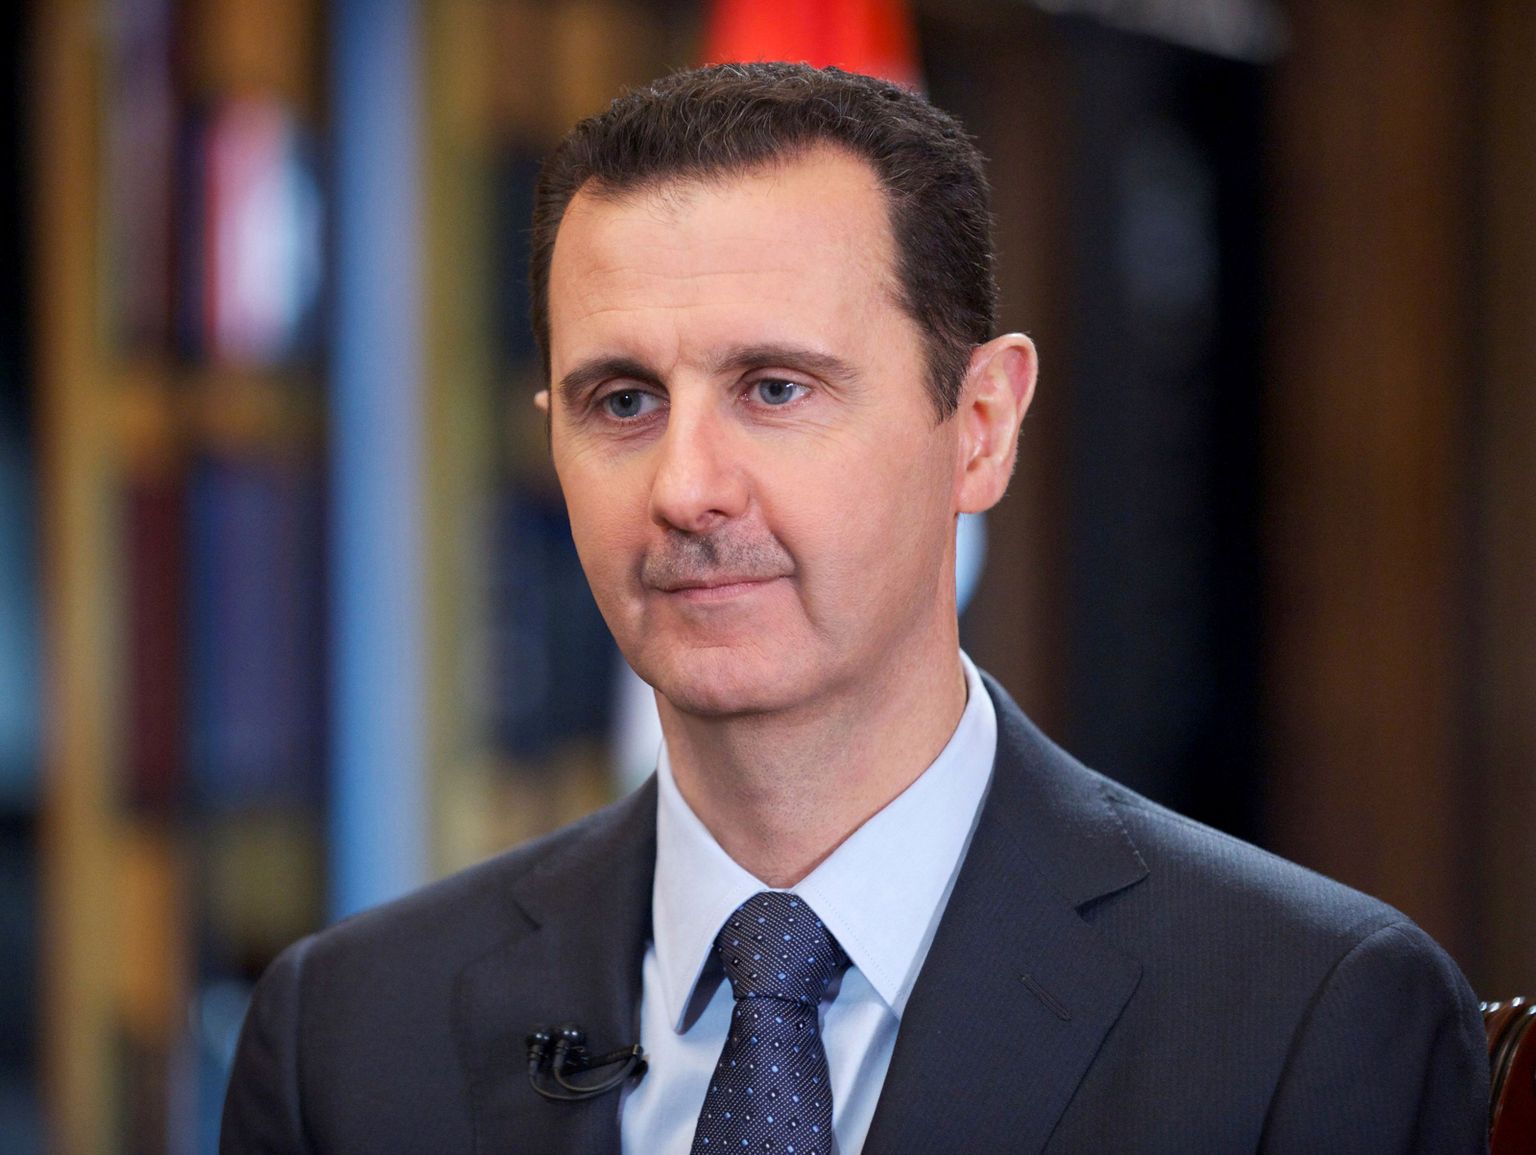 Süüria president Bashar Al-Assad.